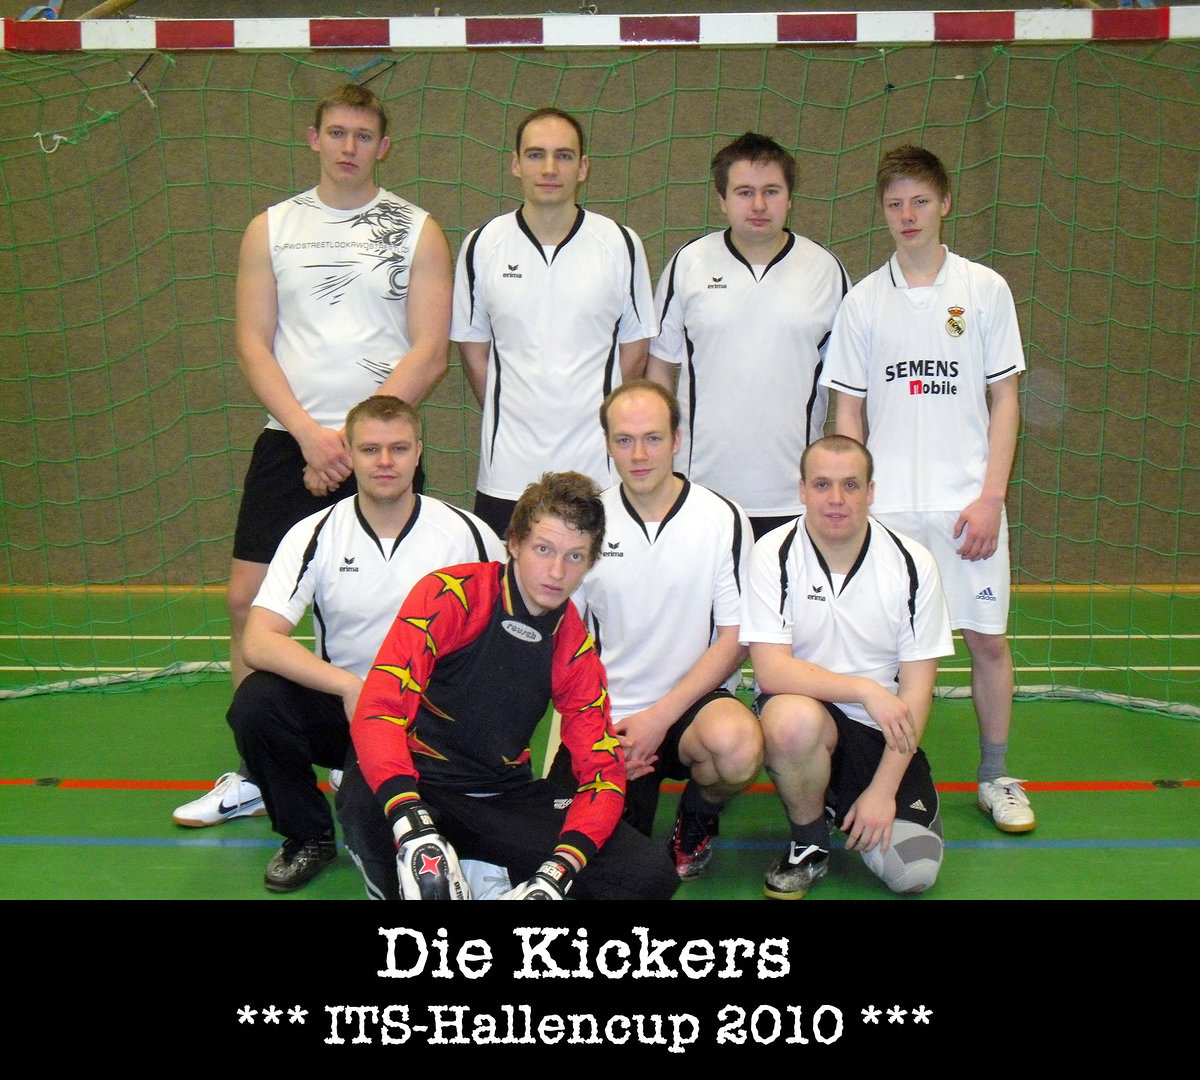 Its hallencup 2010   teamfotos   die kickers retina